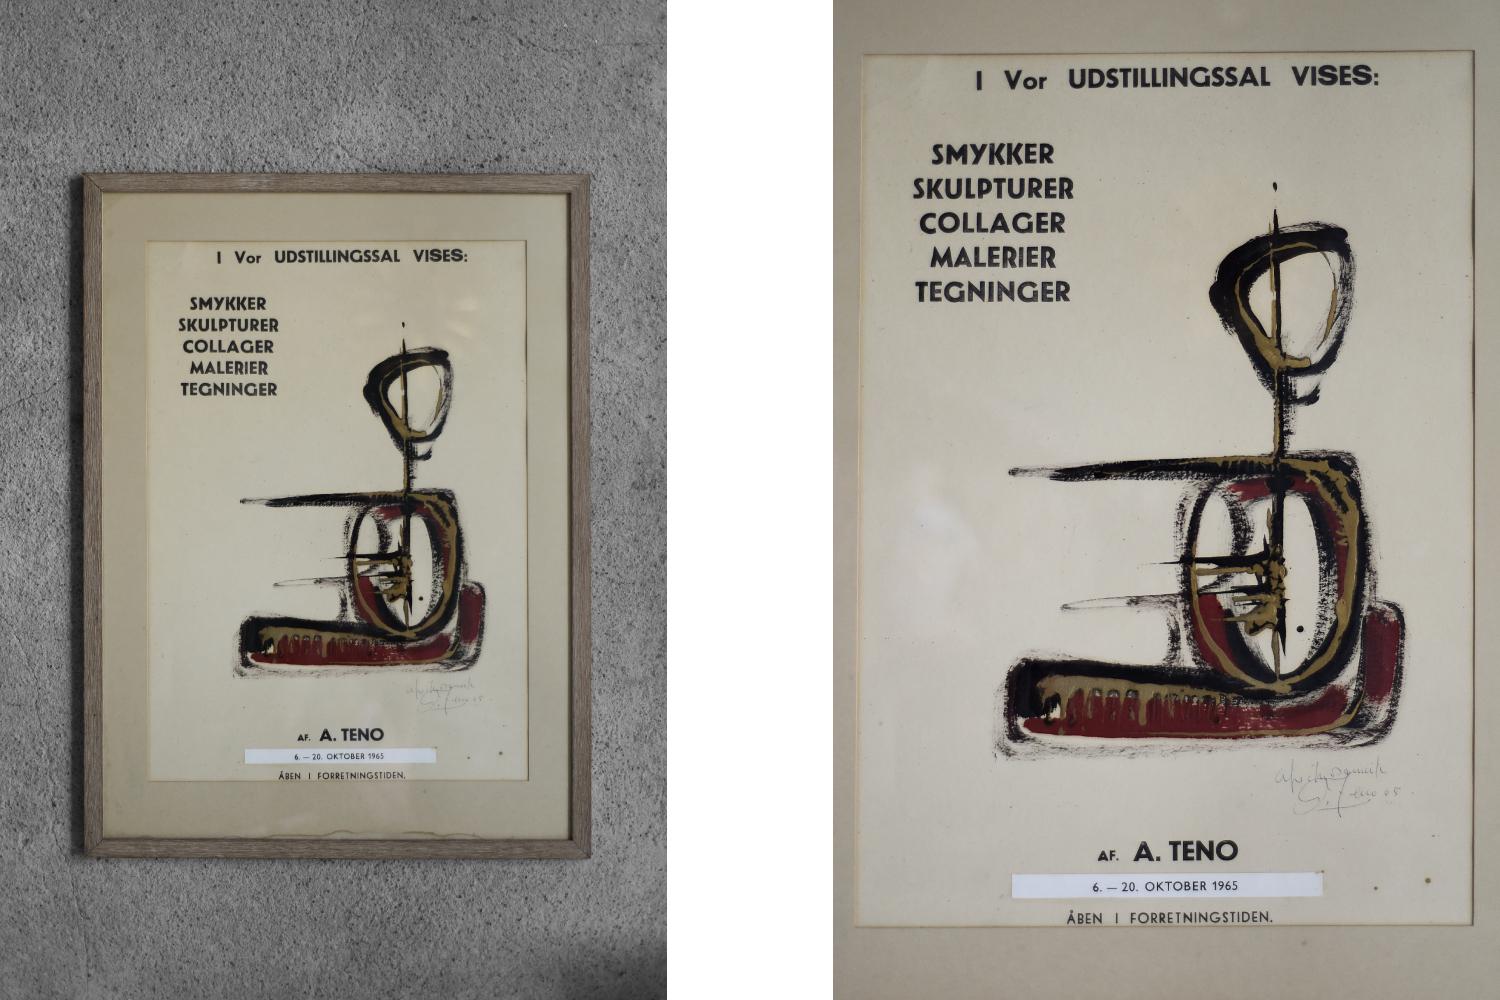 Originalplakat der Ausstellung von Aurelio Tenos Werken vom 6. bis 20. Oktober 1965 in Kopenhagen. Die Ausstellung umfasste Skulpturen, Schmuck, Collagen, Zeichnungen und Gemälde des Autors. Das Plakat trägt die Unterschrift des Autors und das